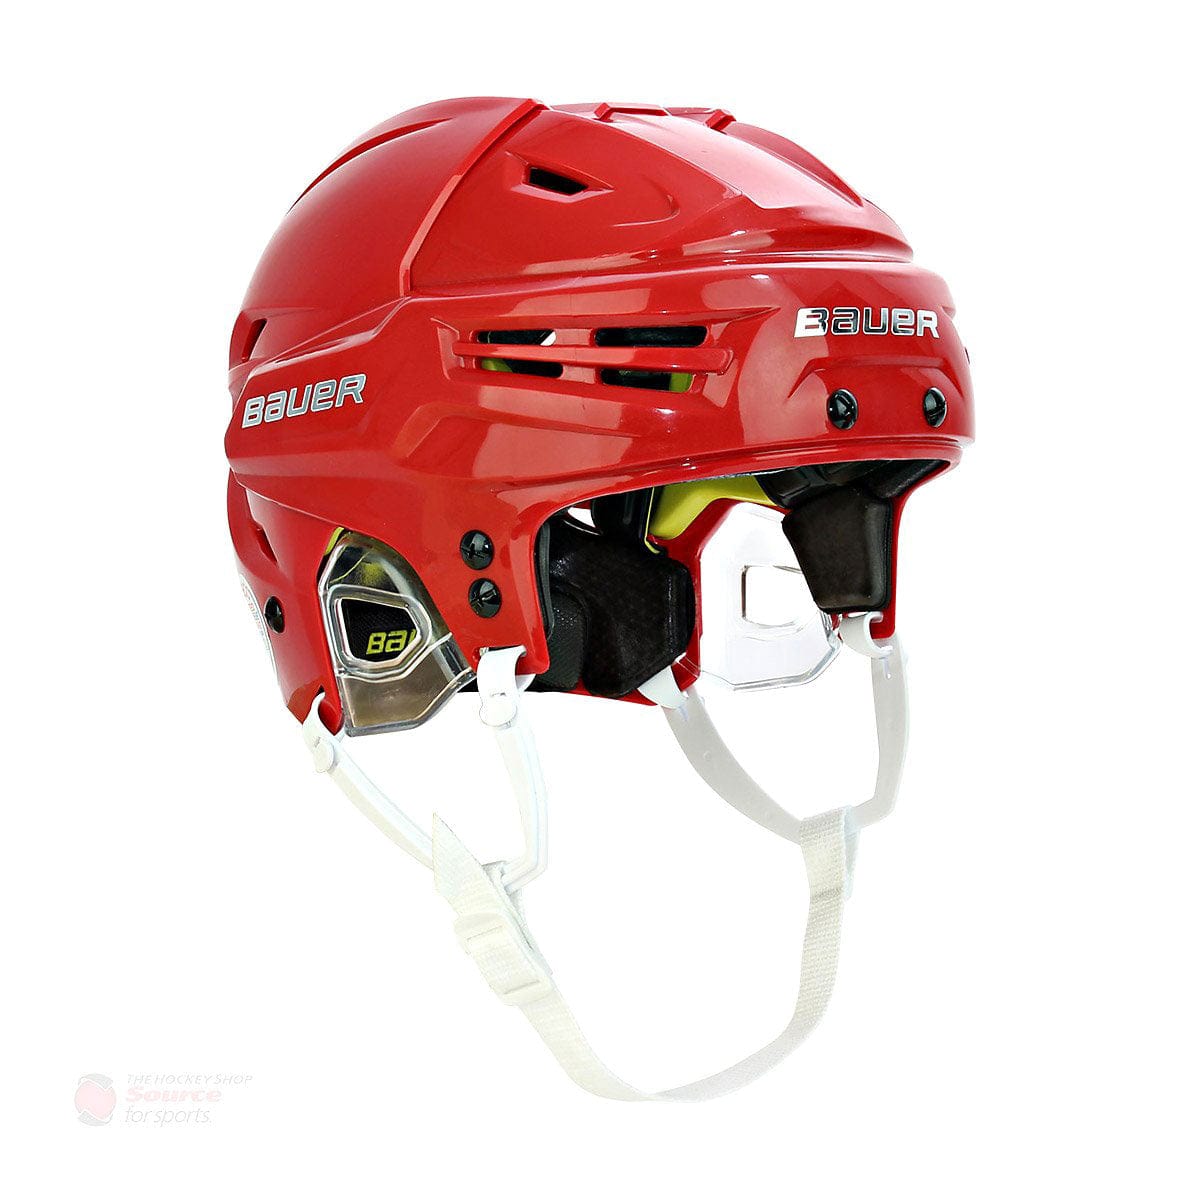 Bauer RE-AKT Hockey Helmet